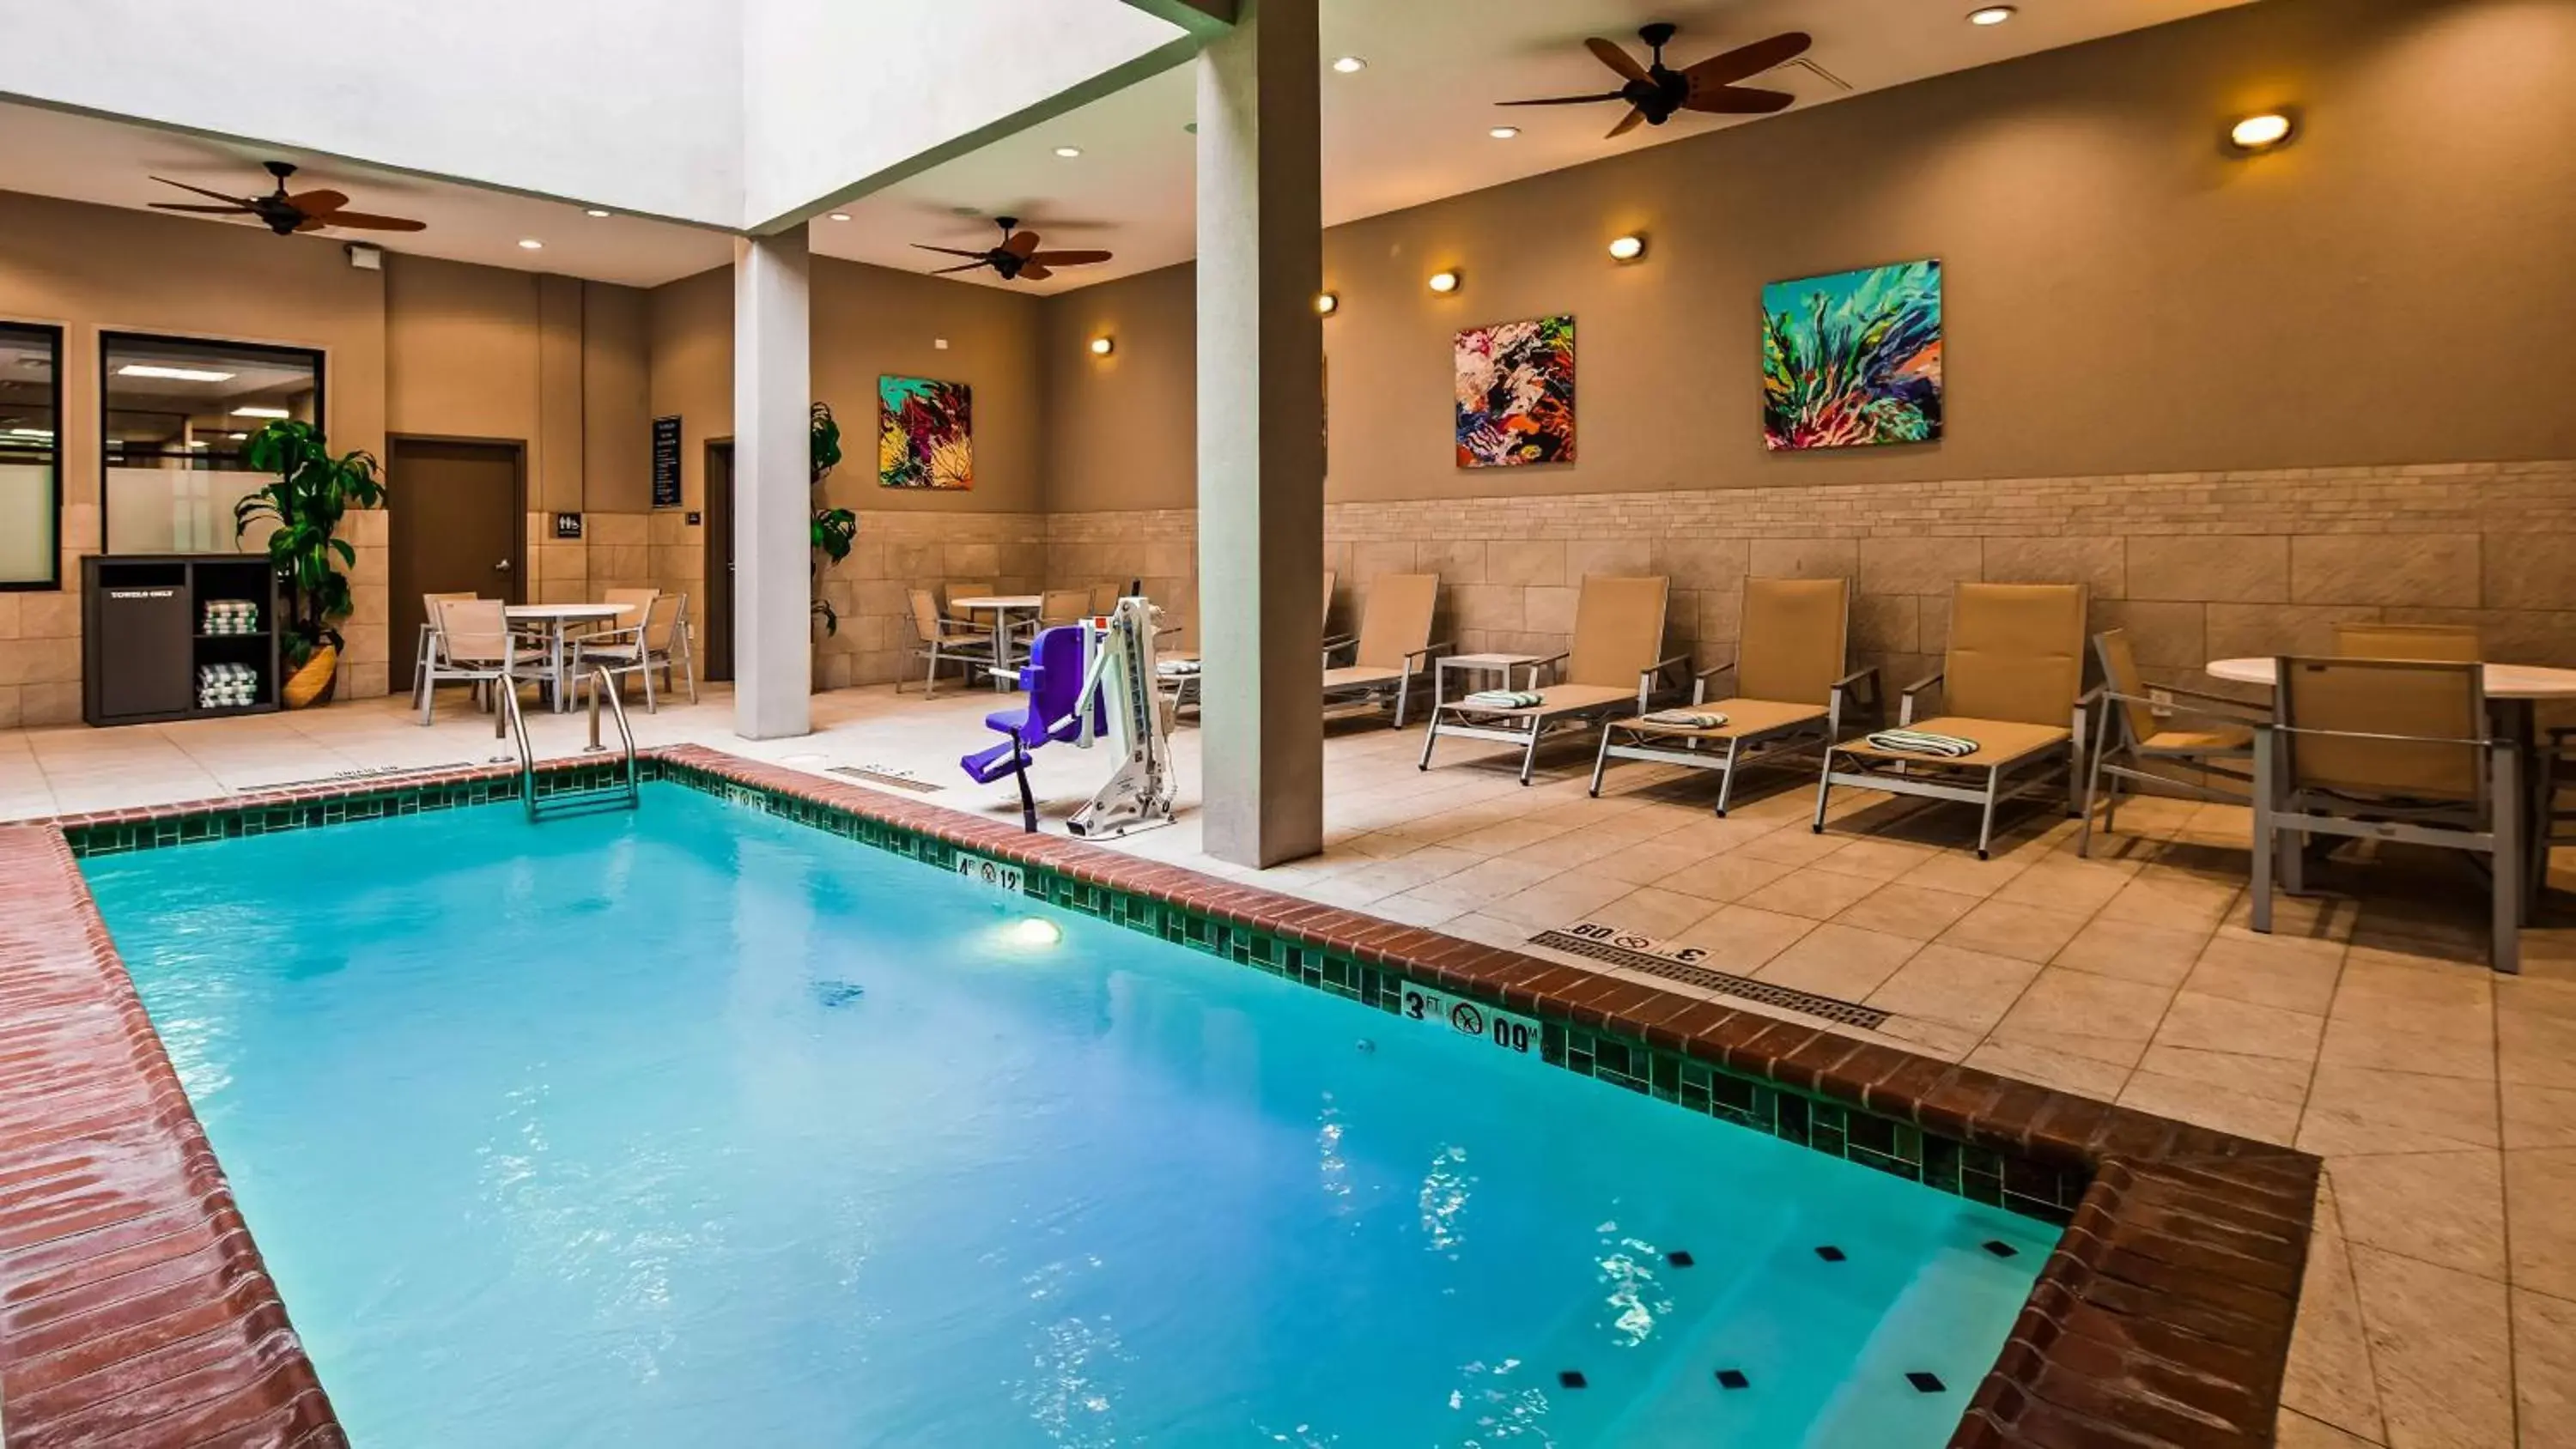 On site, Swimming Pool in Best Western Premier Historic Travelers Hotel Alamo/Riverwalk